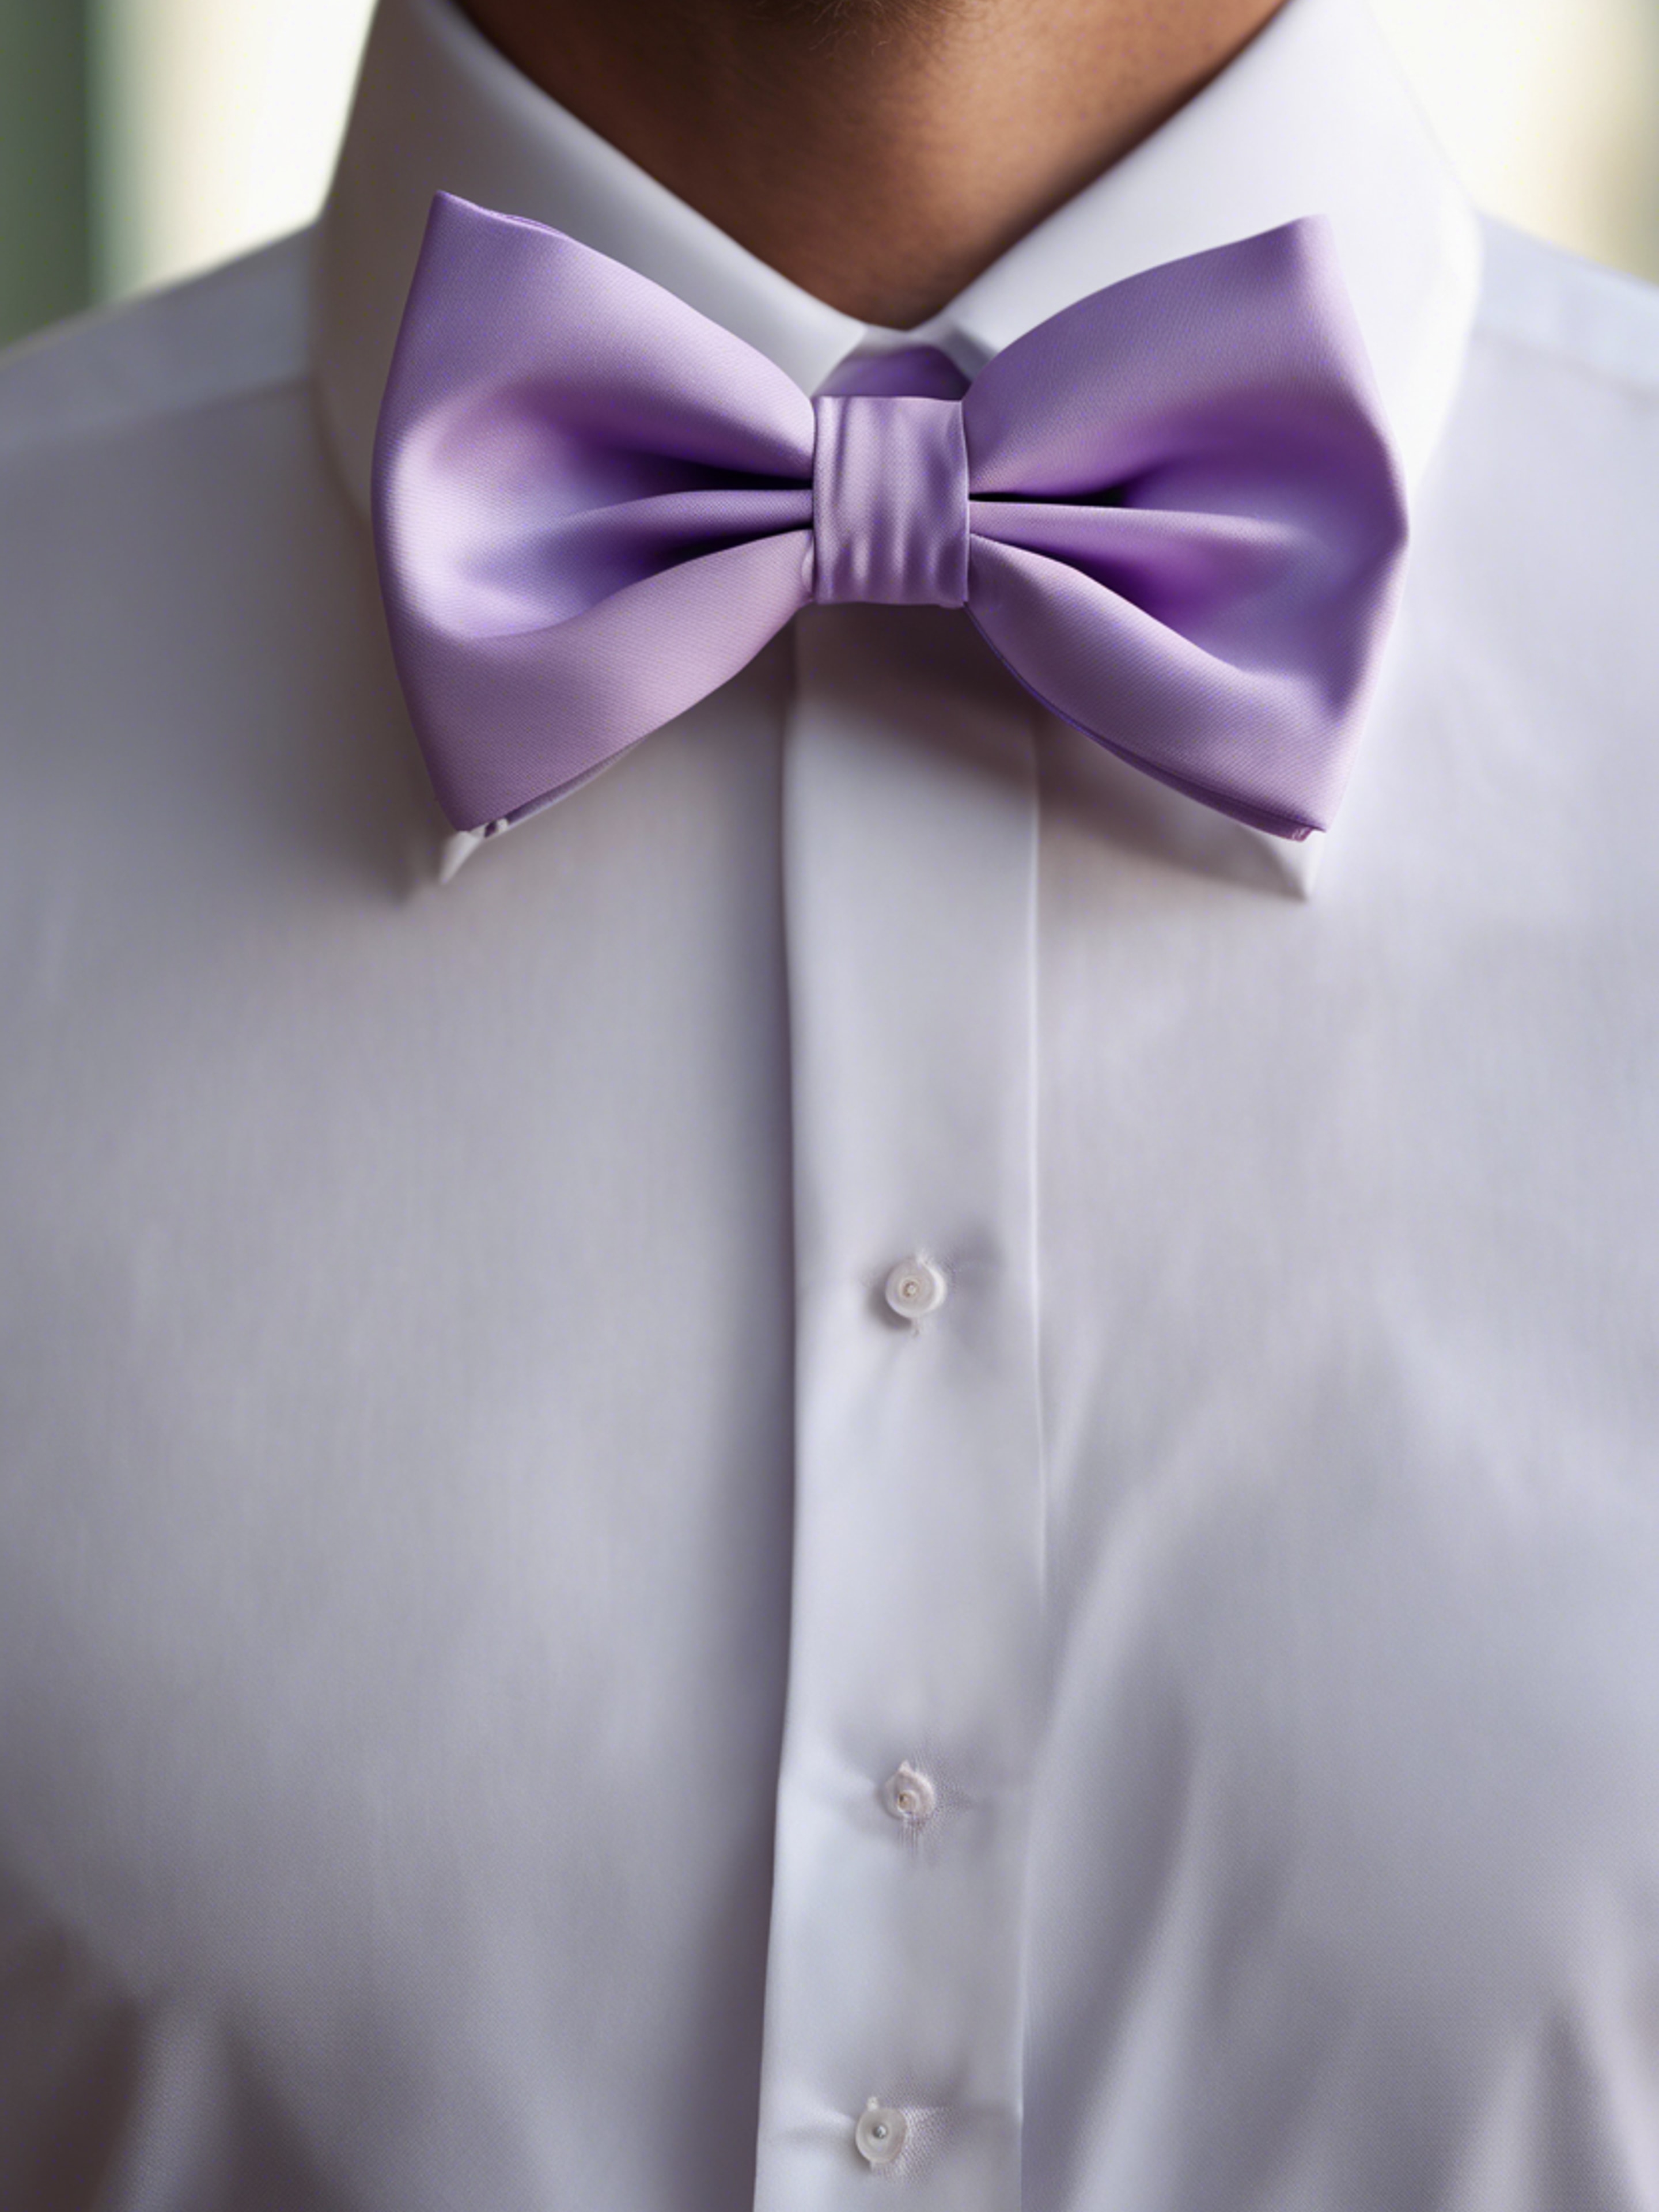 A preppy pastel purple bow tie on a crisp white shirt. 벽지[5e87c7412f5947d28f4c]